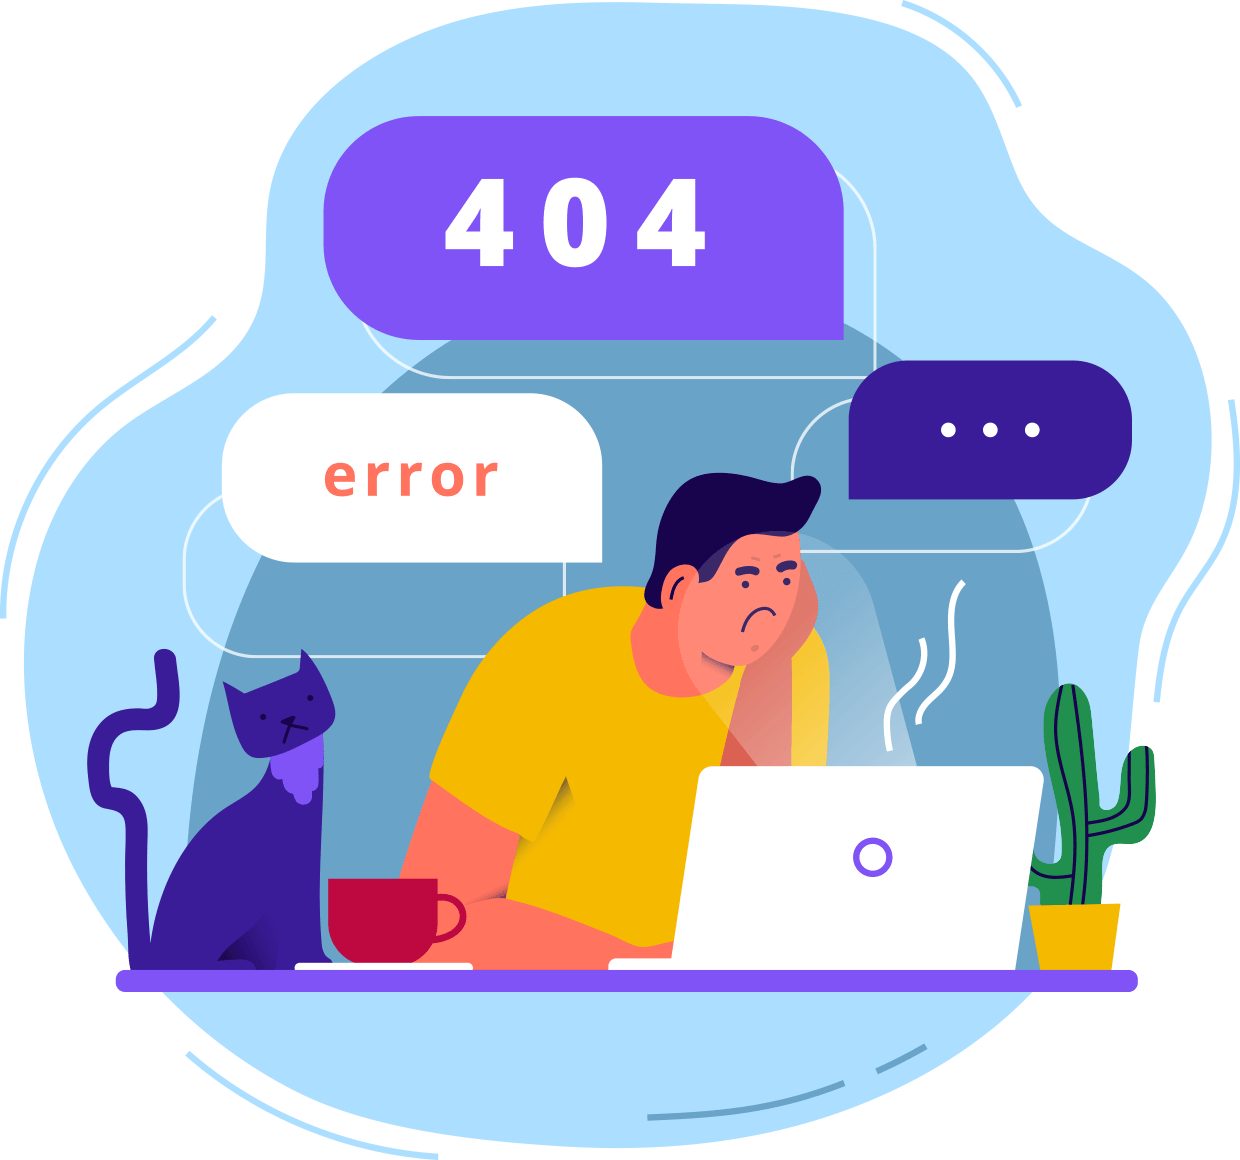 Error - 404